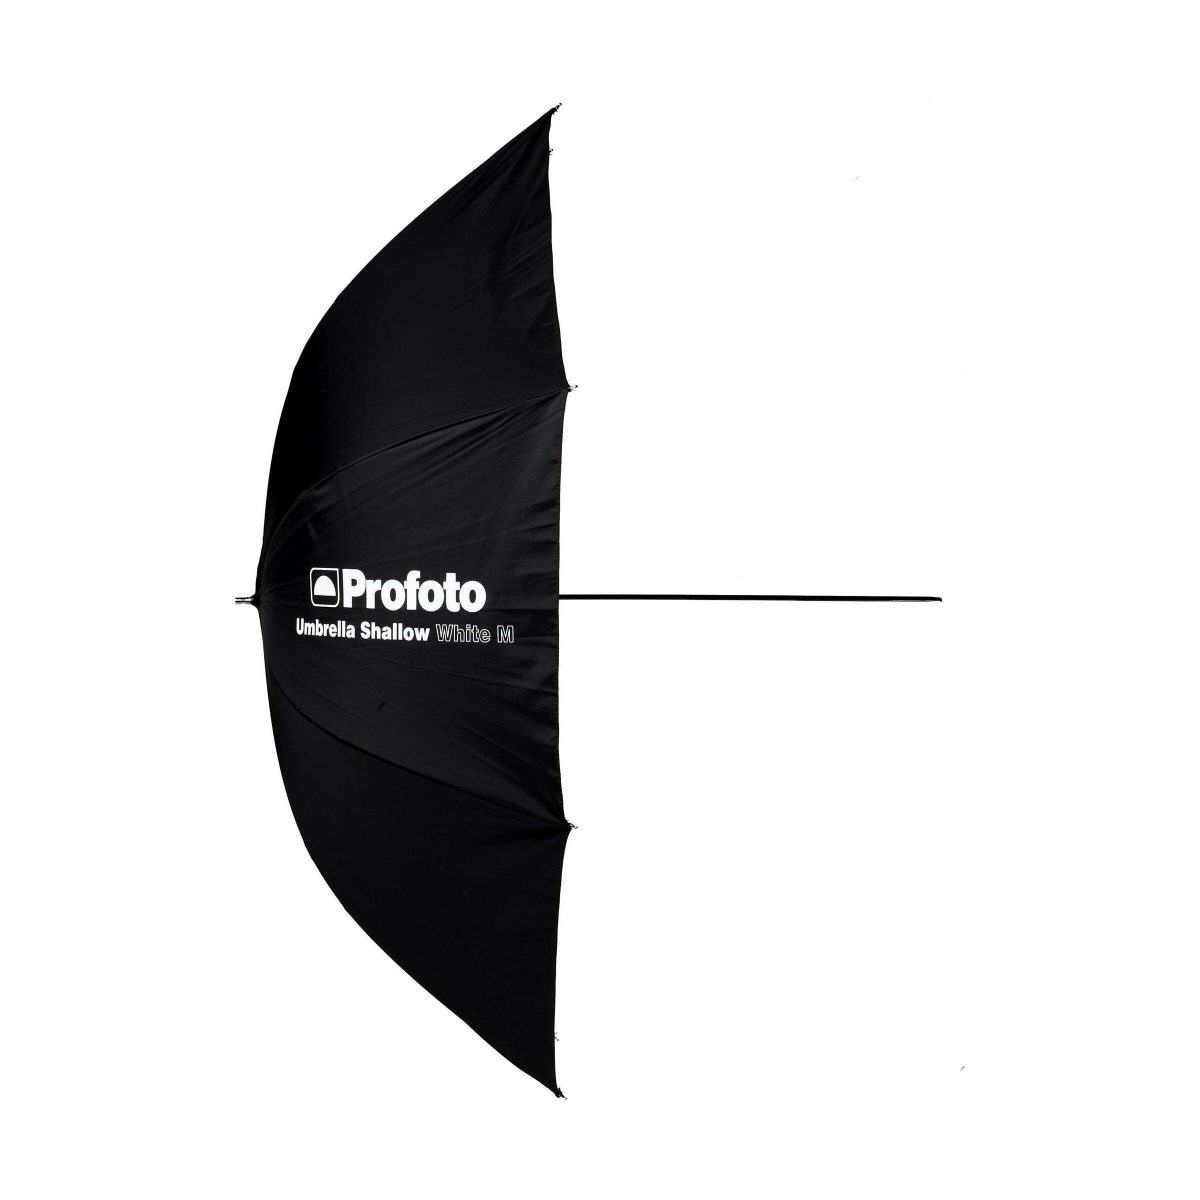 profoto_umbrella_shallow_white_m_01